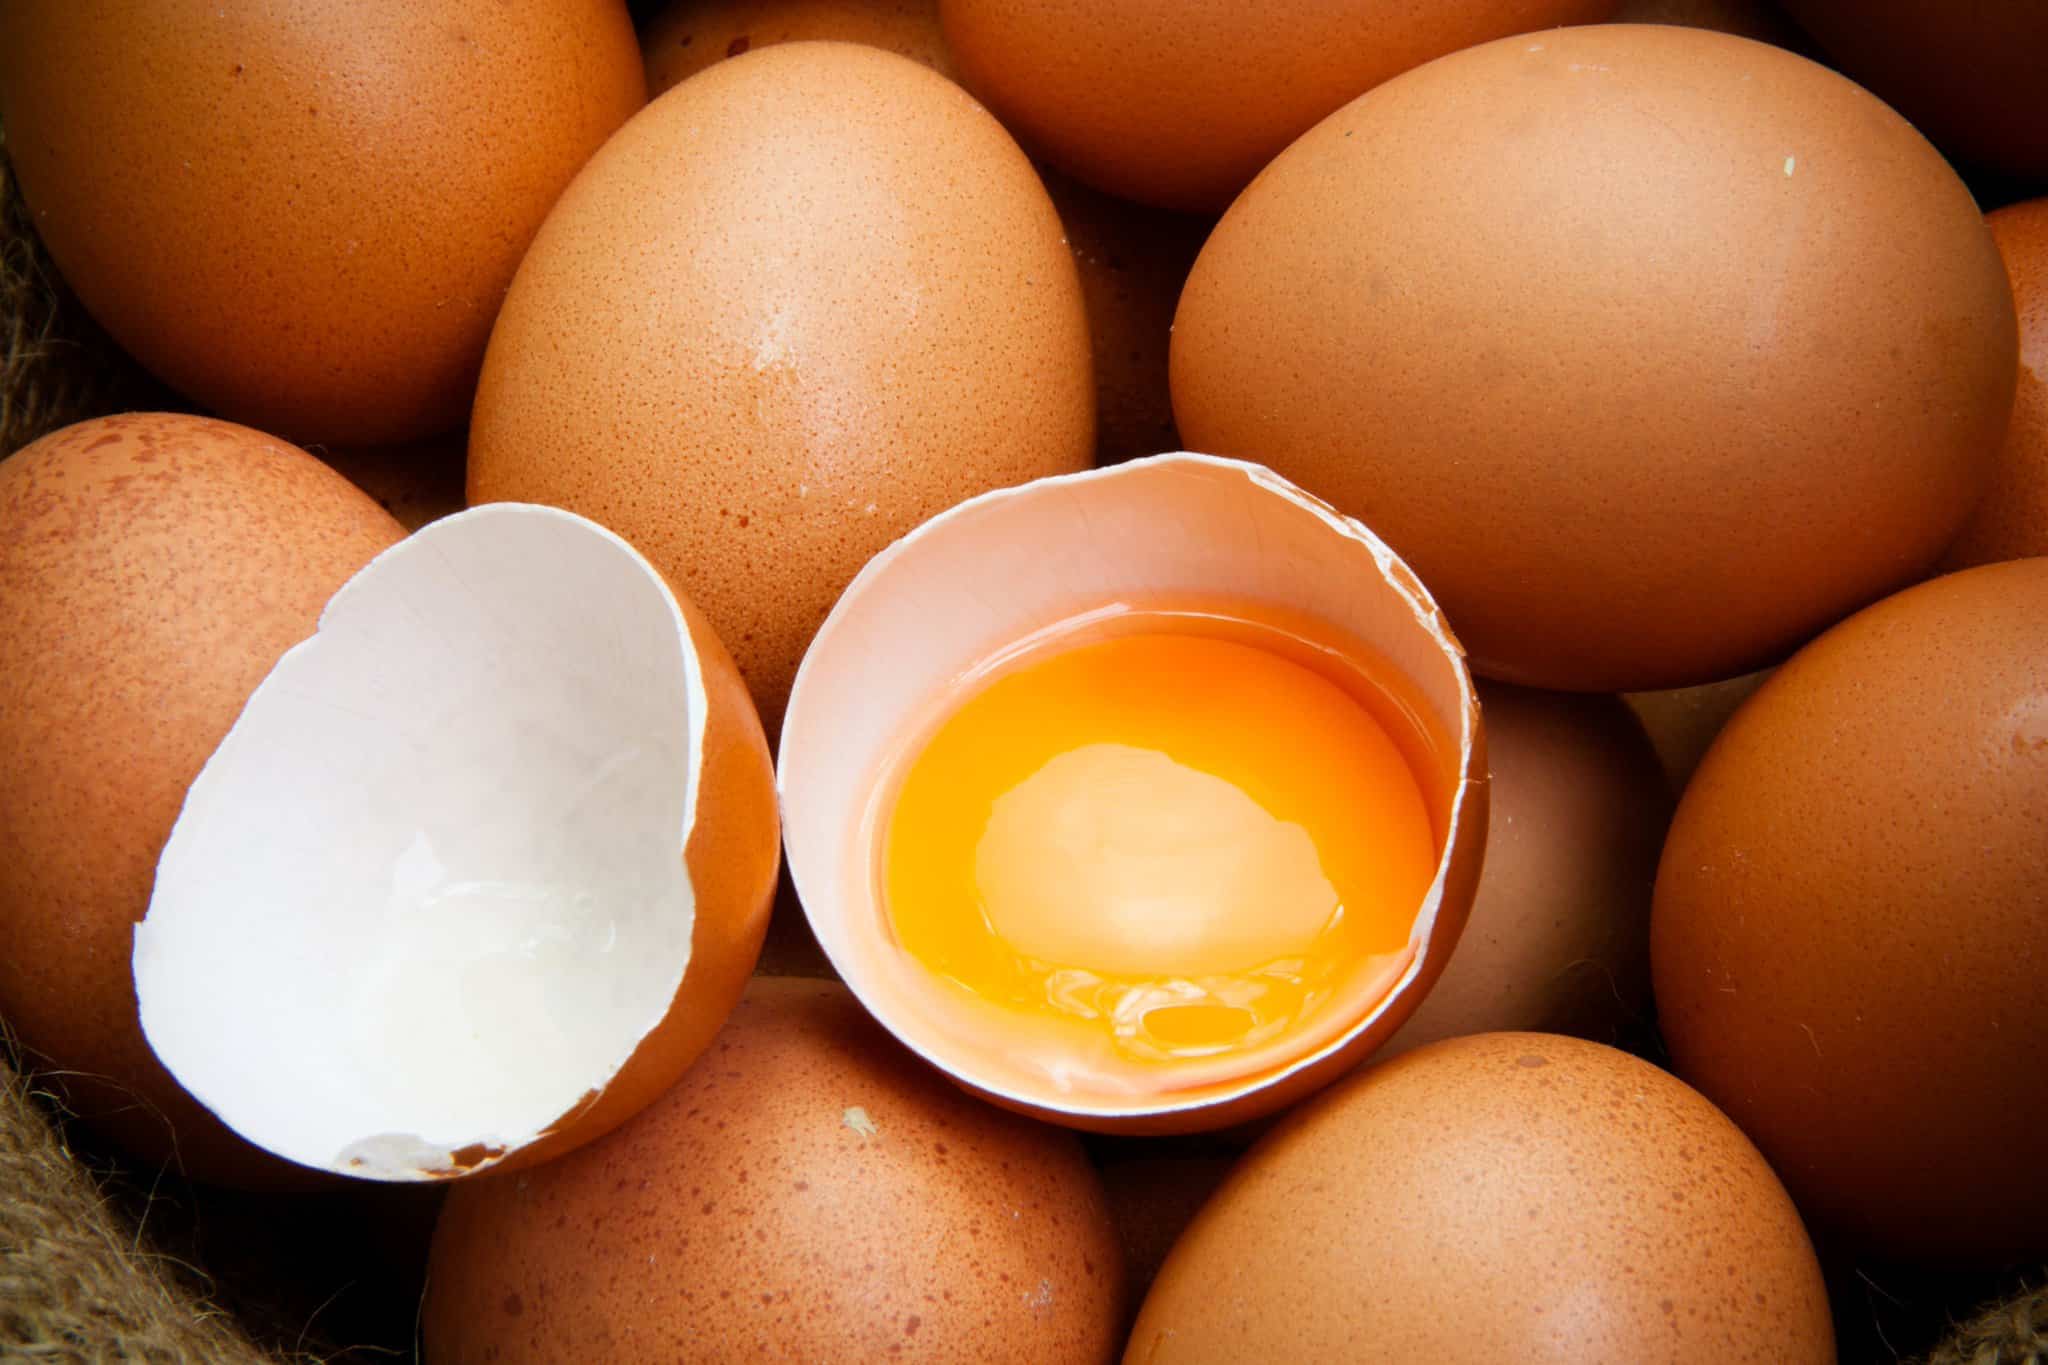 egg yolk improves your eyesight